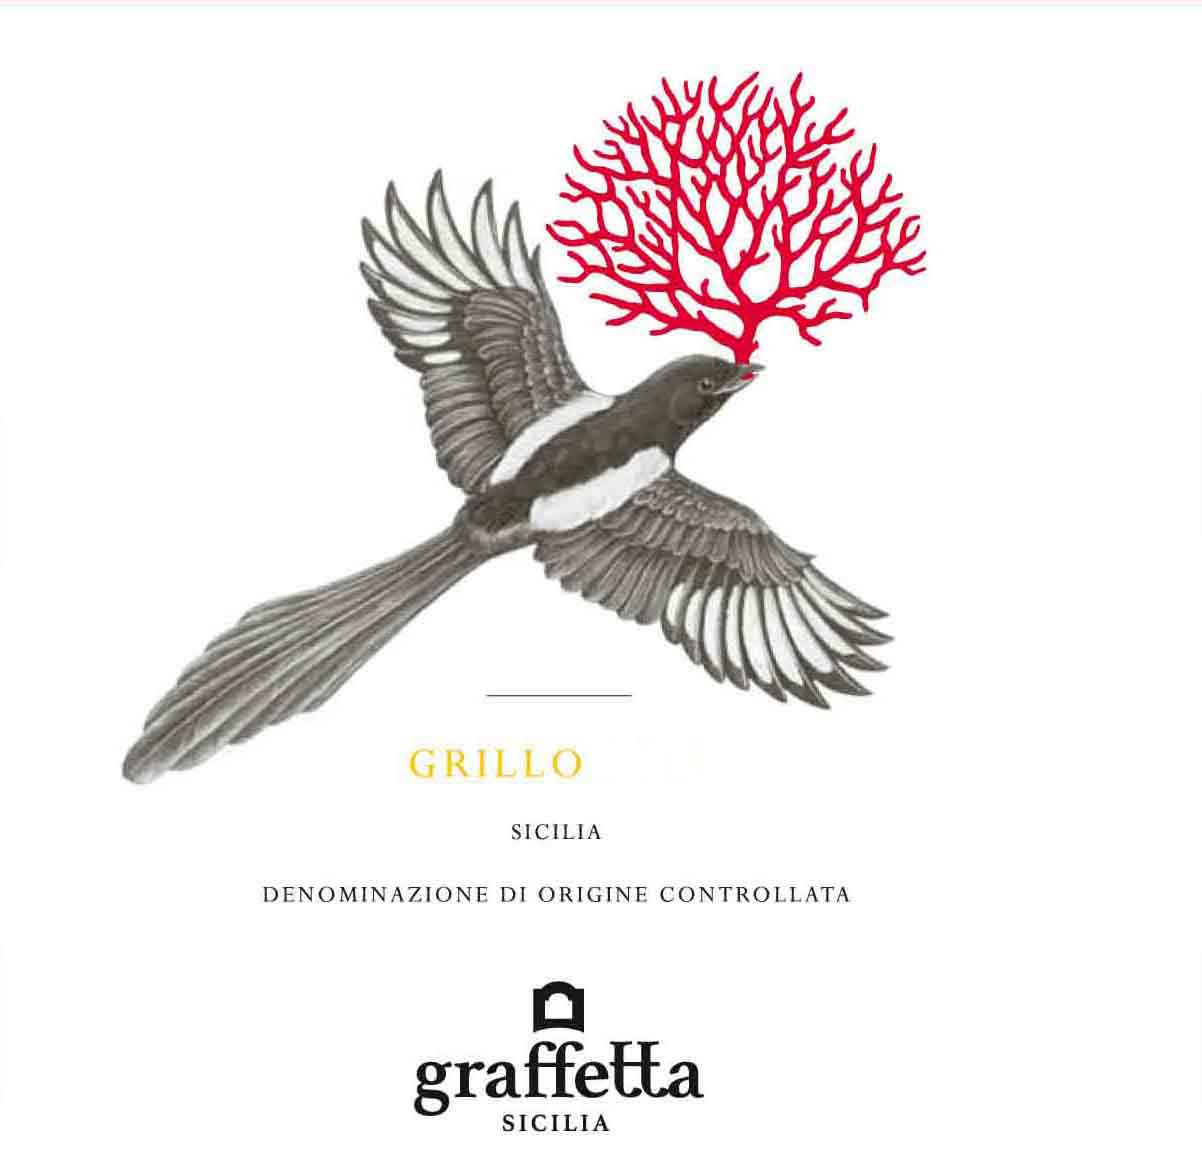 Graffetta - Grillo label